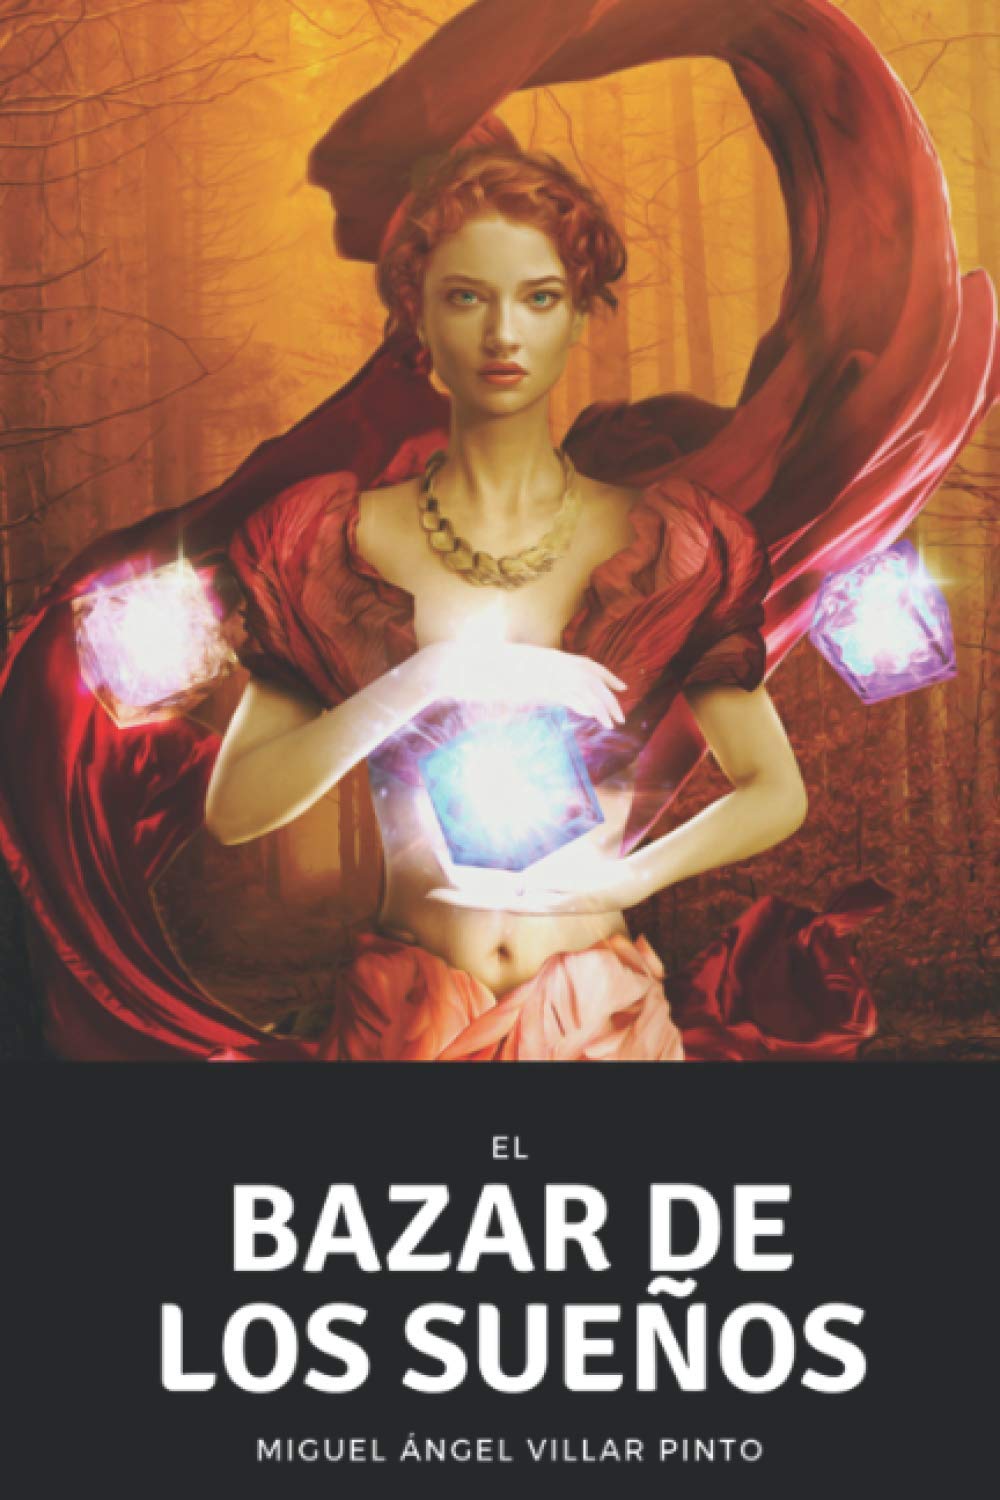 El bazar de los sueños (Cuentos Maravillosos) (Spanish Edition)